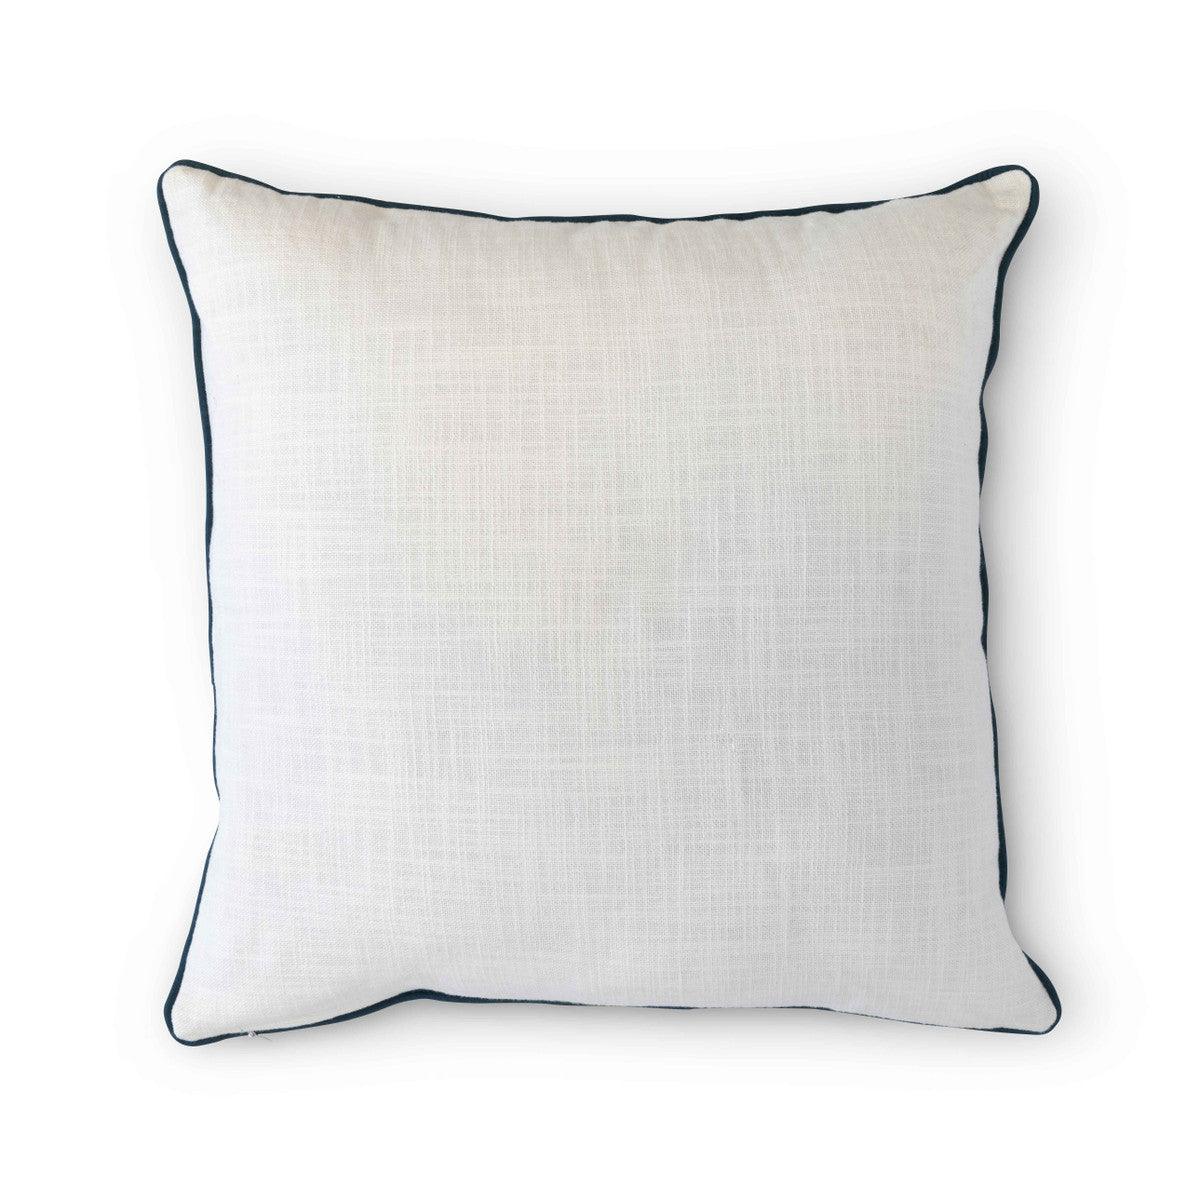 Campsite Appliqued Cotton Pillow - Signastyle Boutique